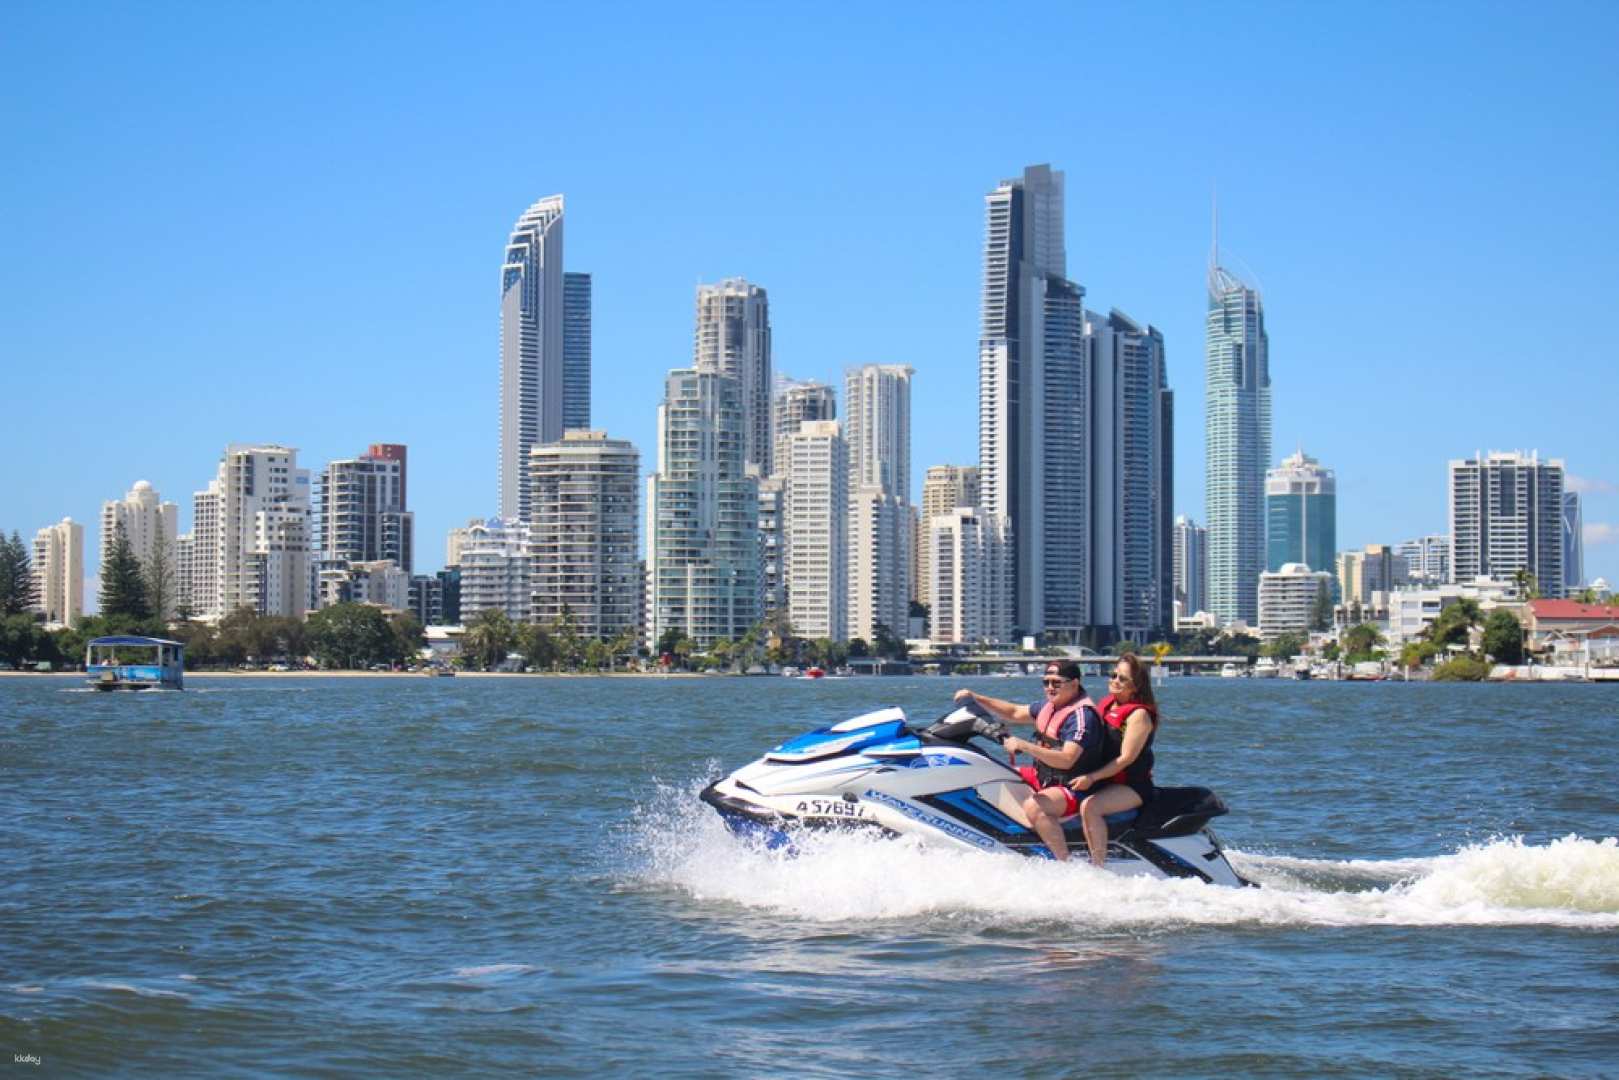 澳洲-昆士蘭黃金海岸水上摩托艇導覽之旅